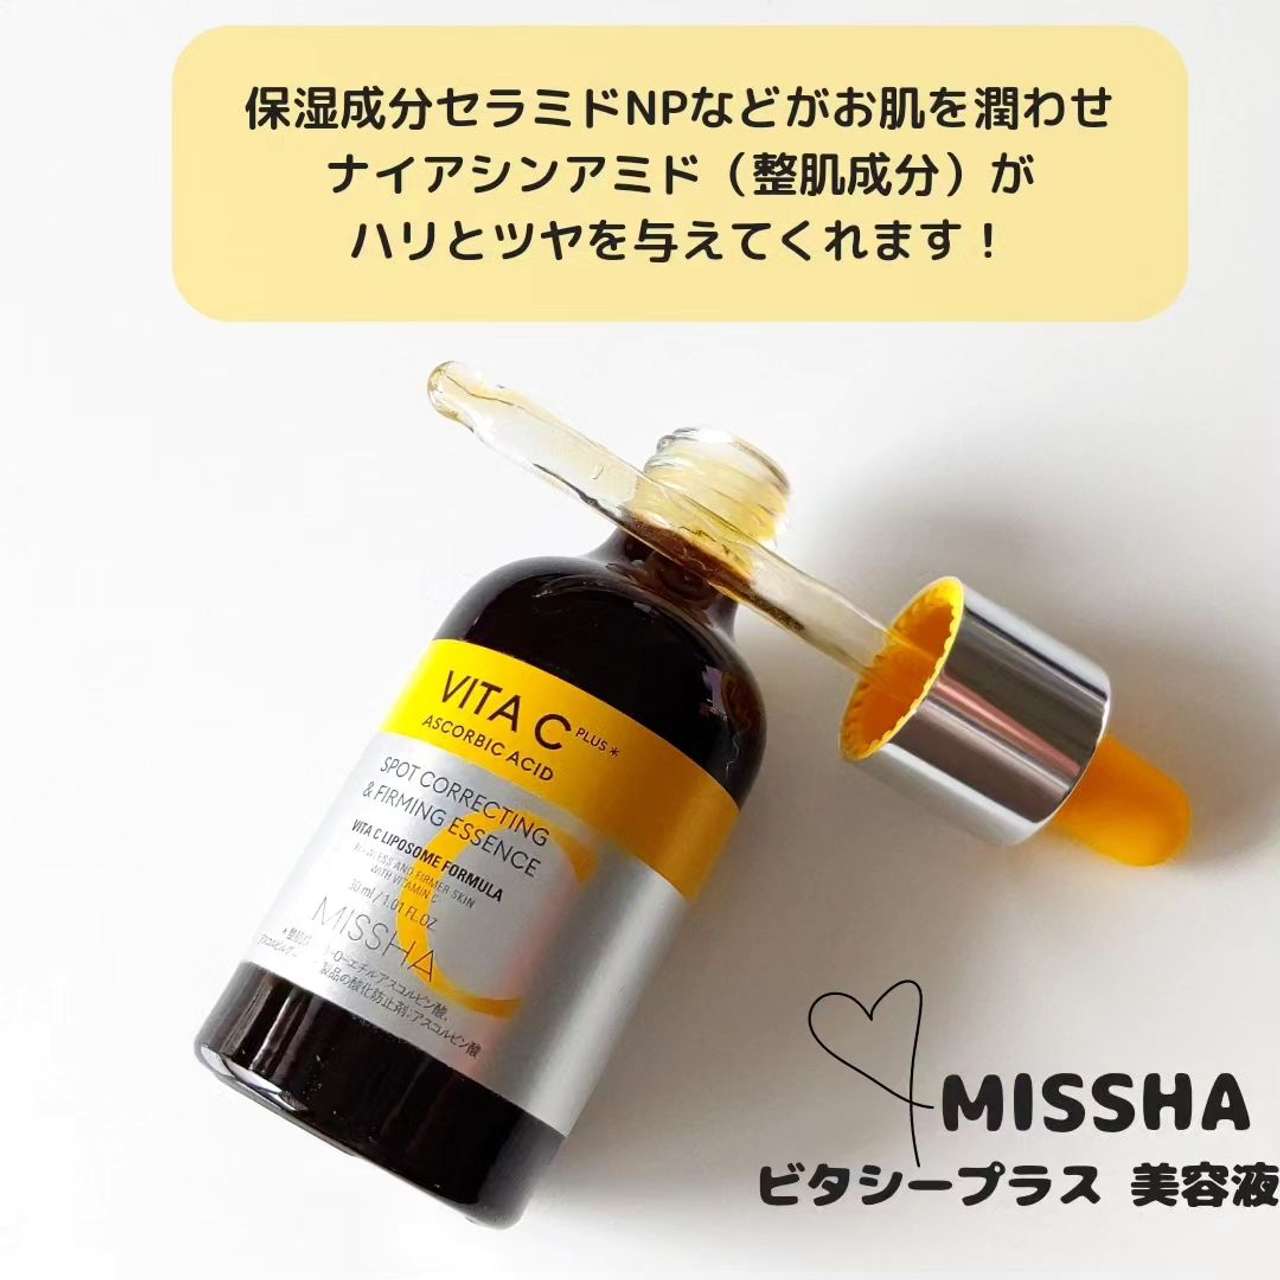 MISSHA VITA C 化粧水 美容液 TWICE サナ特典付き - 基礎化粧品